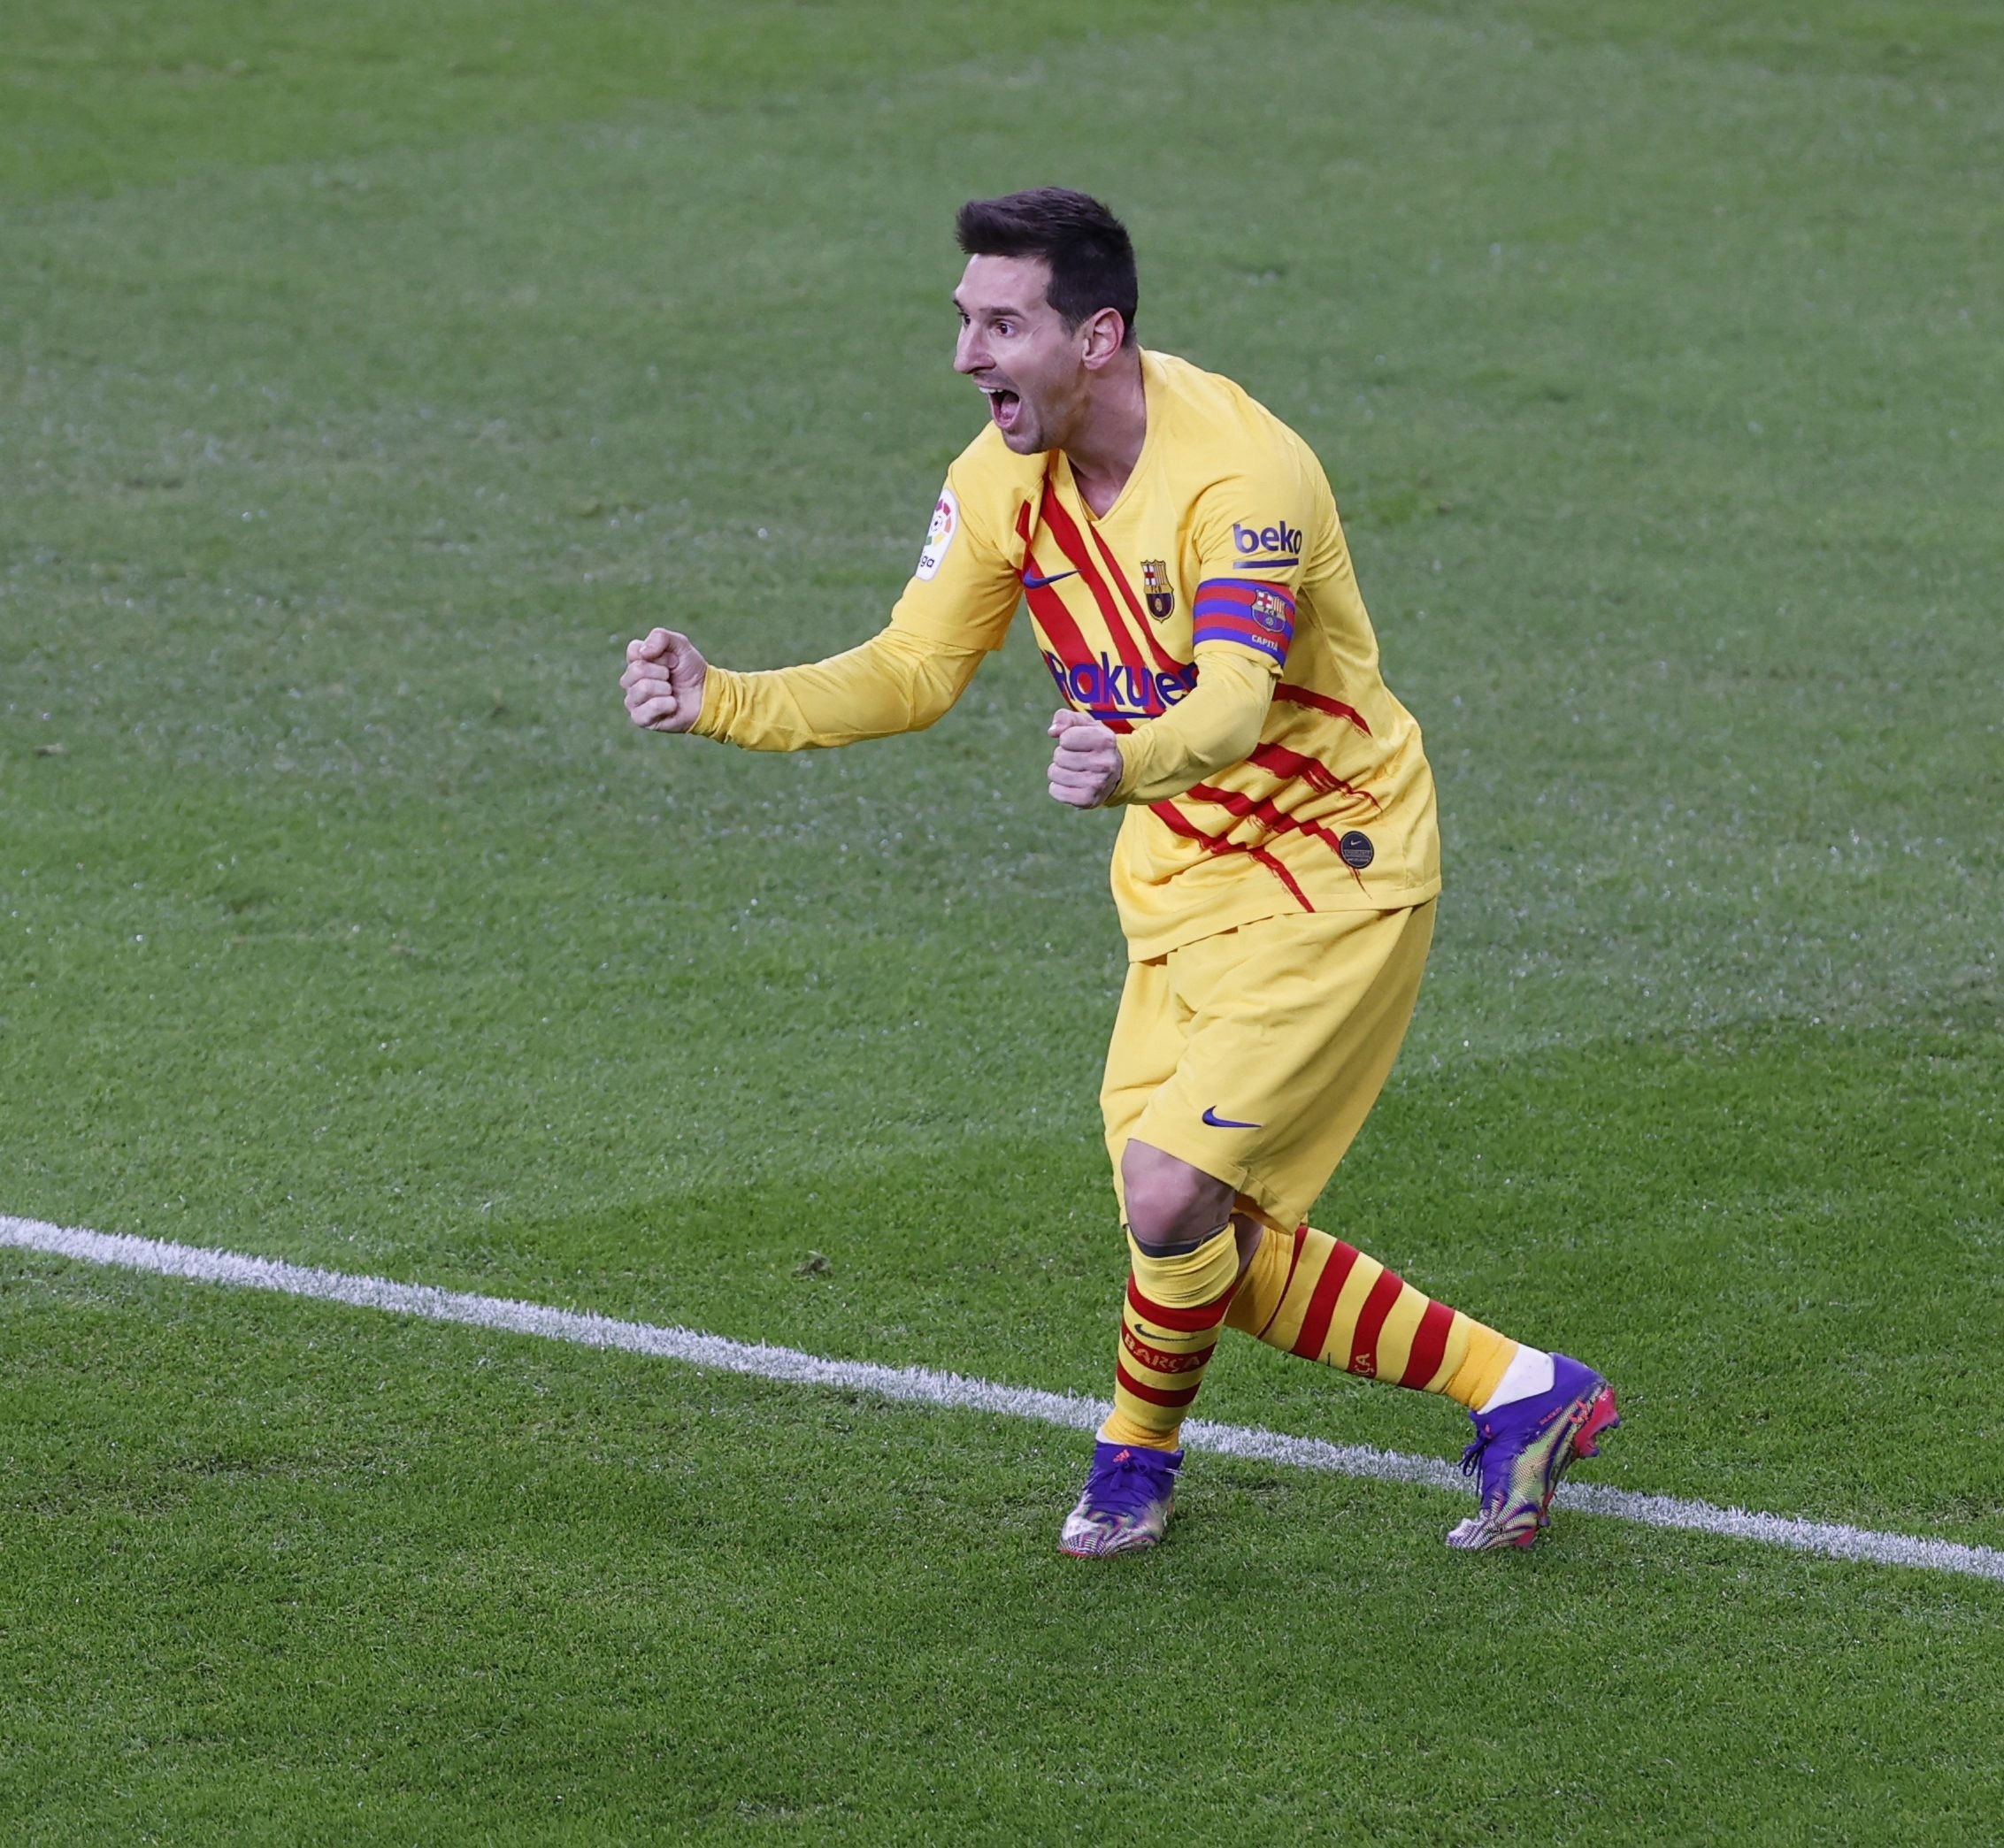 La FOTO del regreso de Leo Messi con el Barcelona que se volvió viral: “1 vs 5”